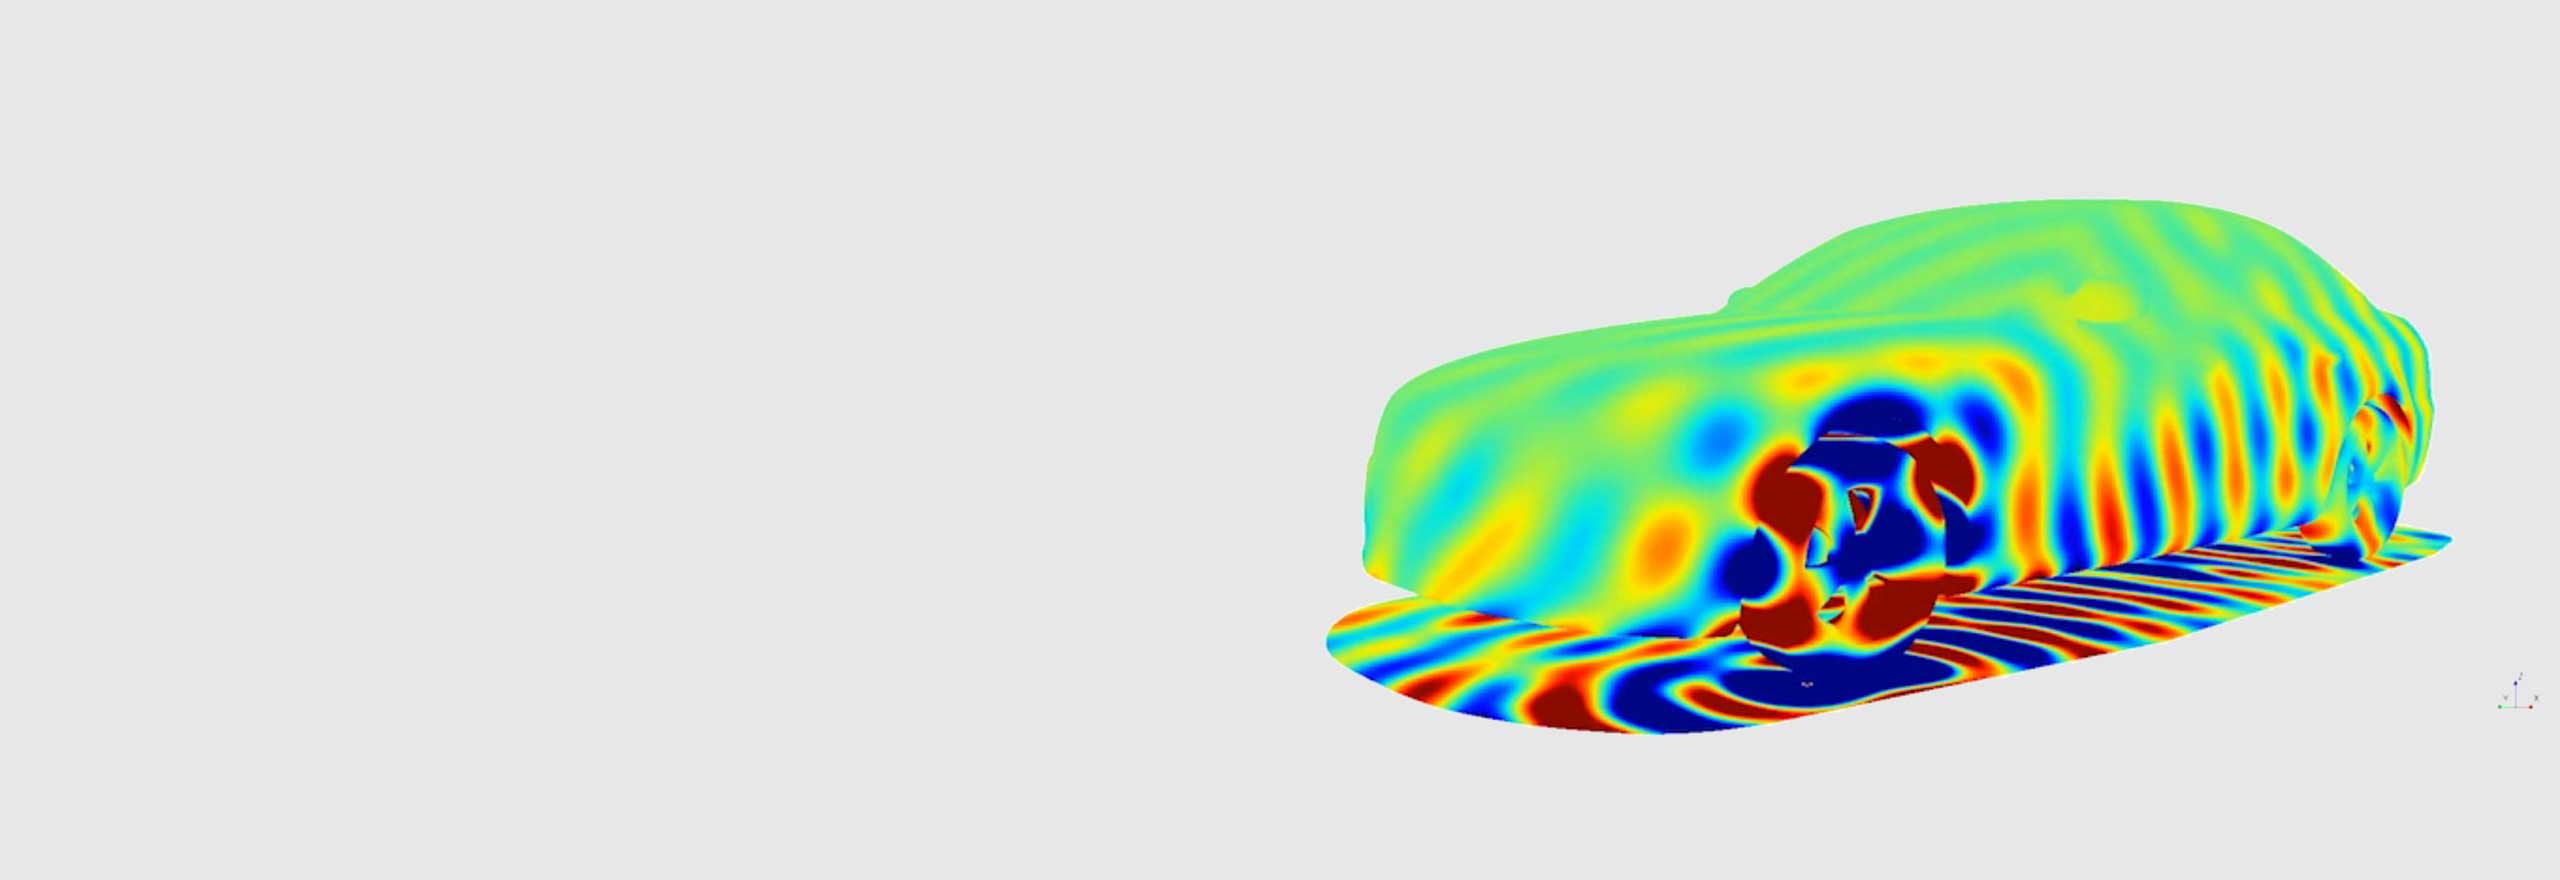 Simulazione del rumore di passaggio di un veicolo mediante un software di simulazione acustica 